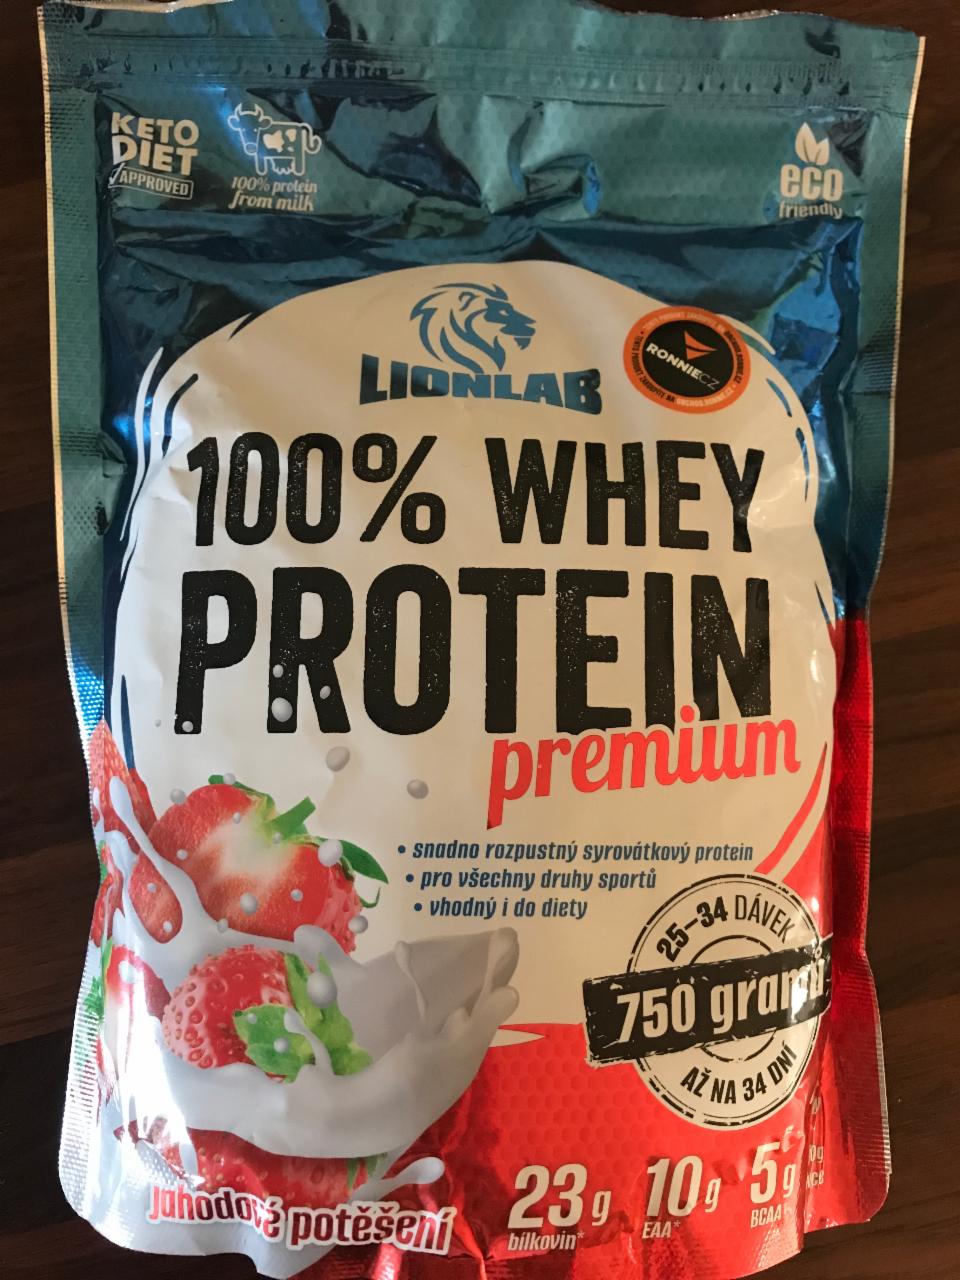 Fotografie - 100% Whey Protein premium jahodové potěšení Lionlab